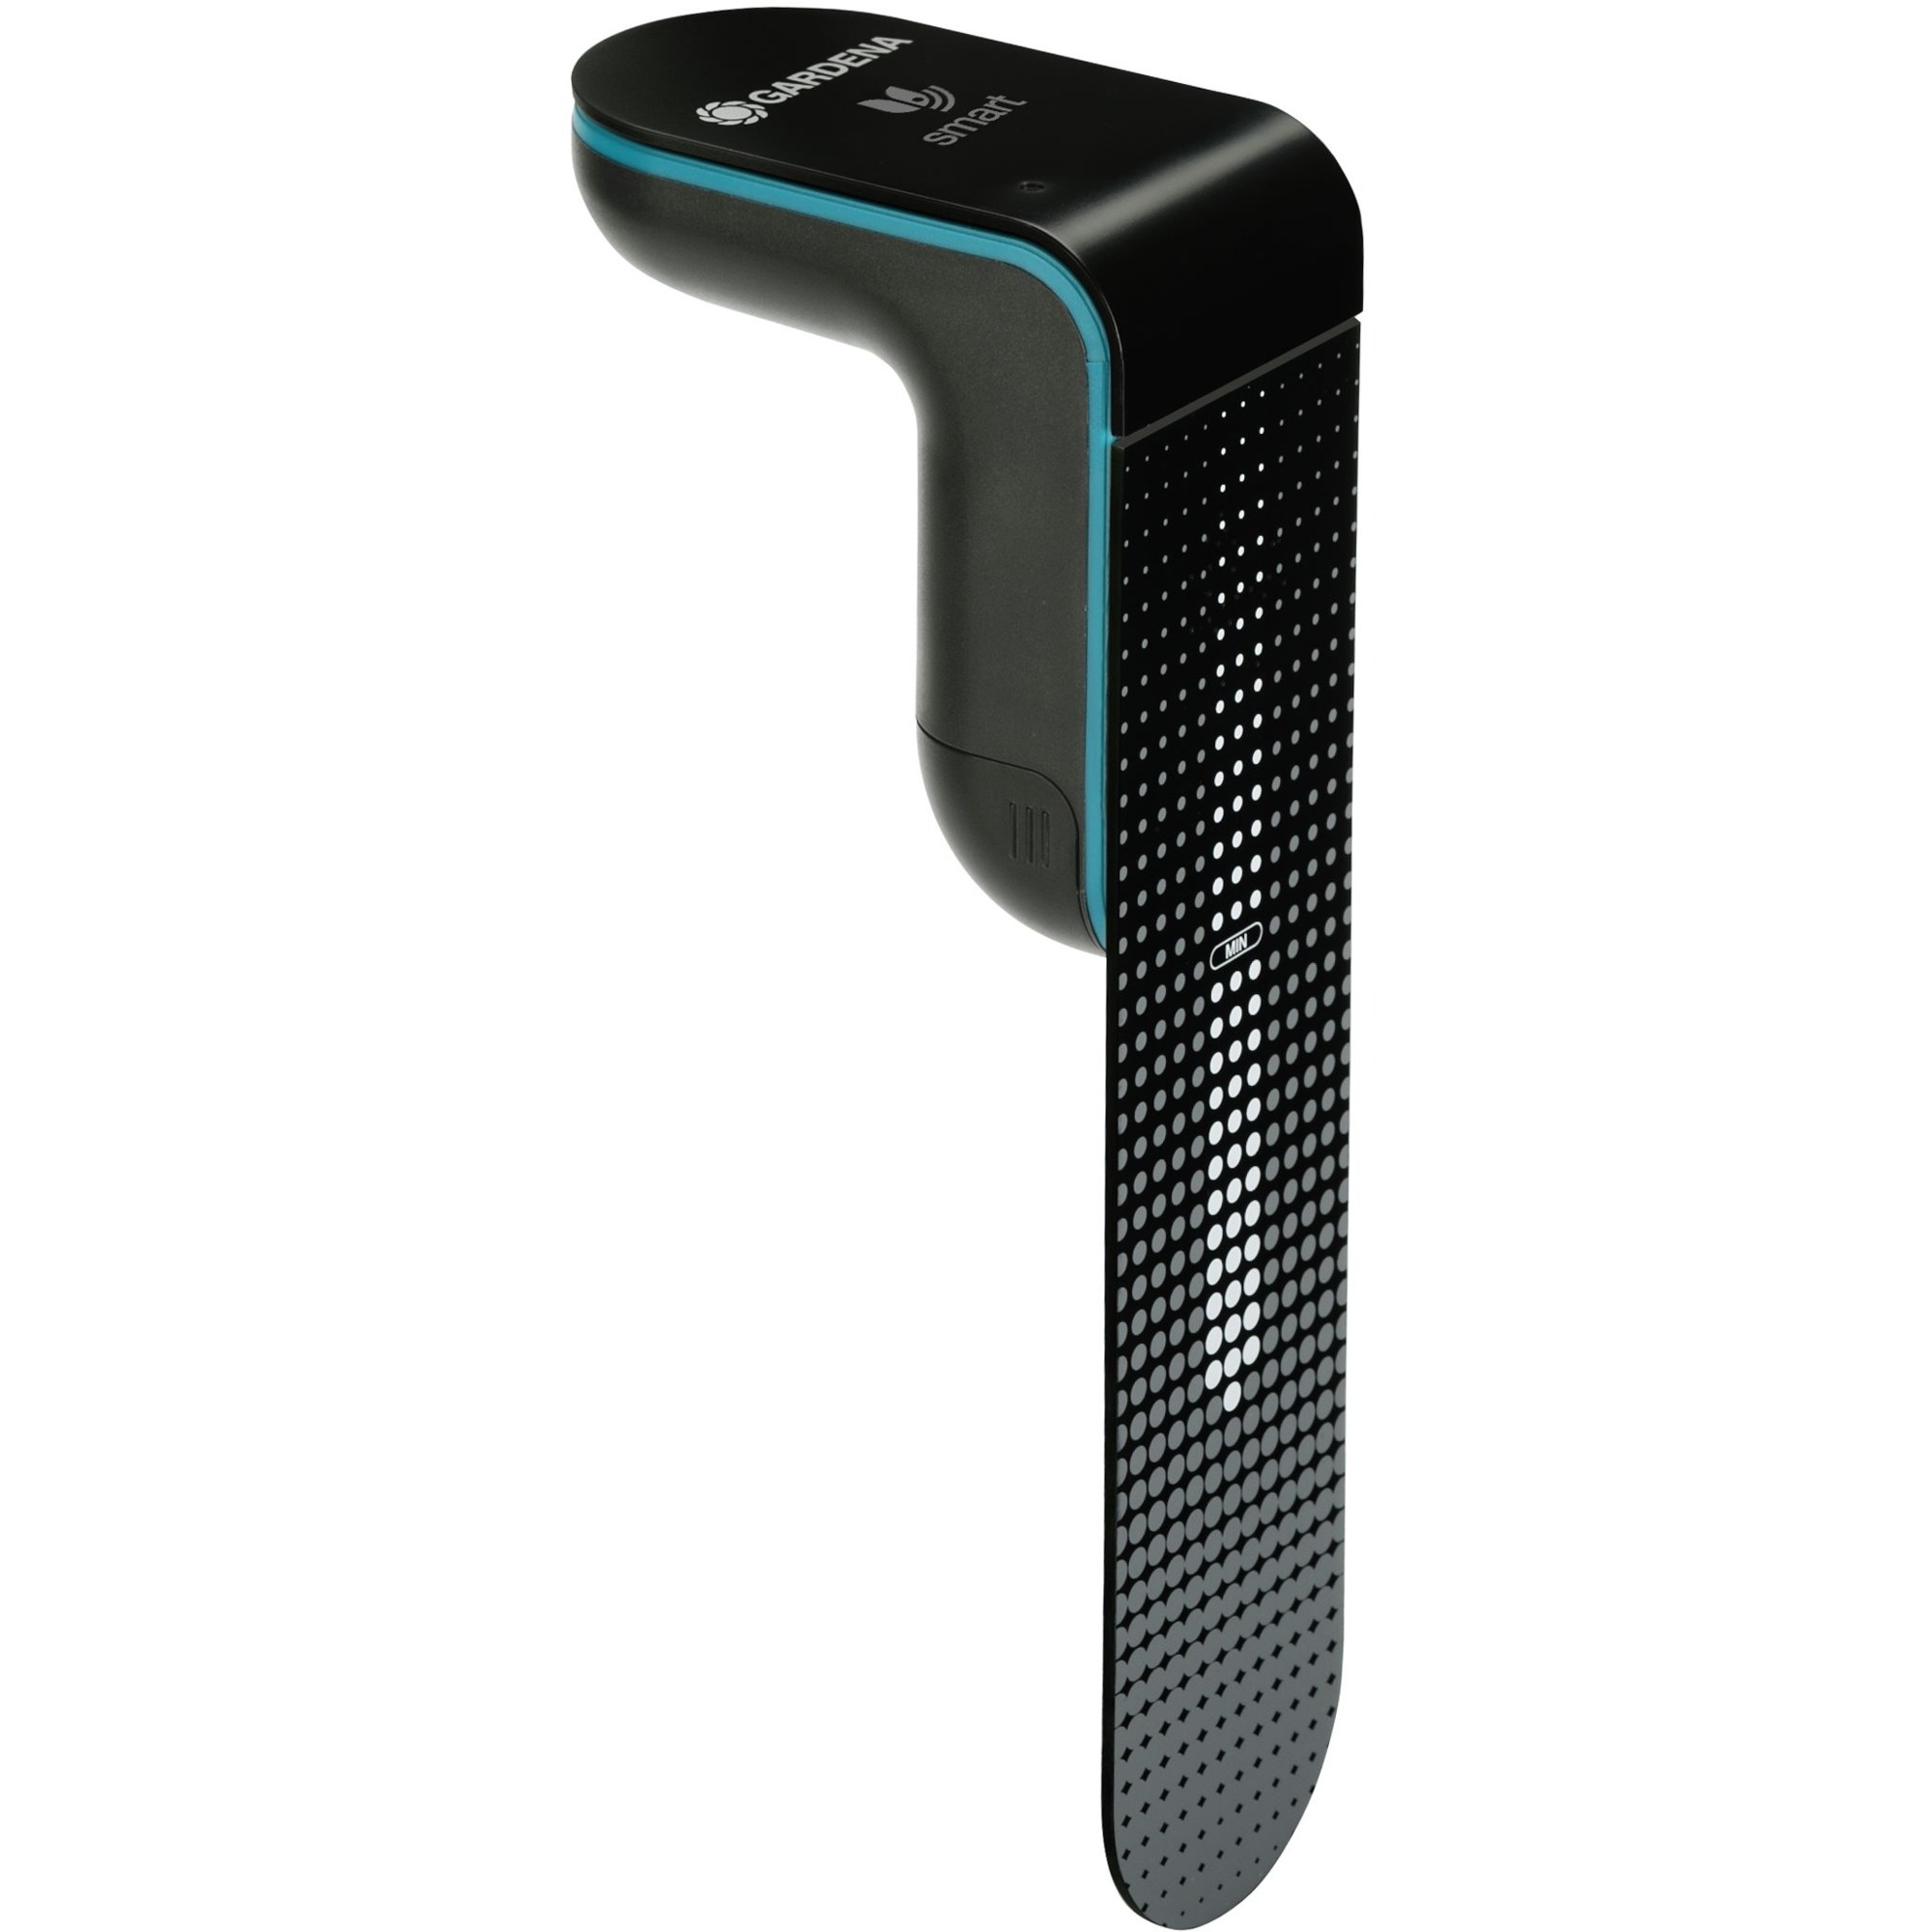 Image of Alternate - smart Sensor online einkaufen bei Alternate